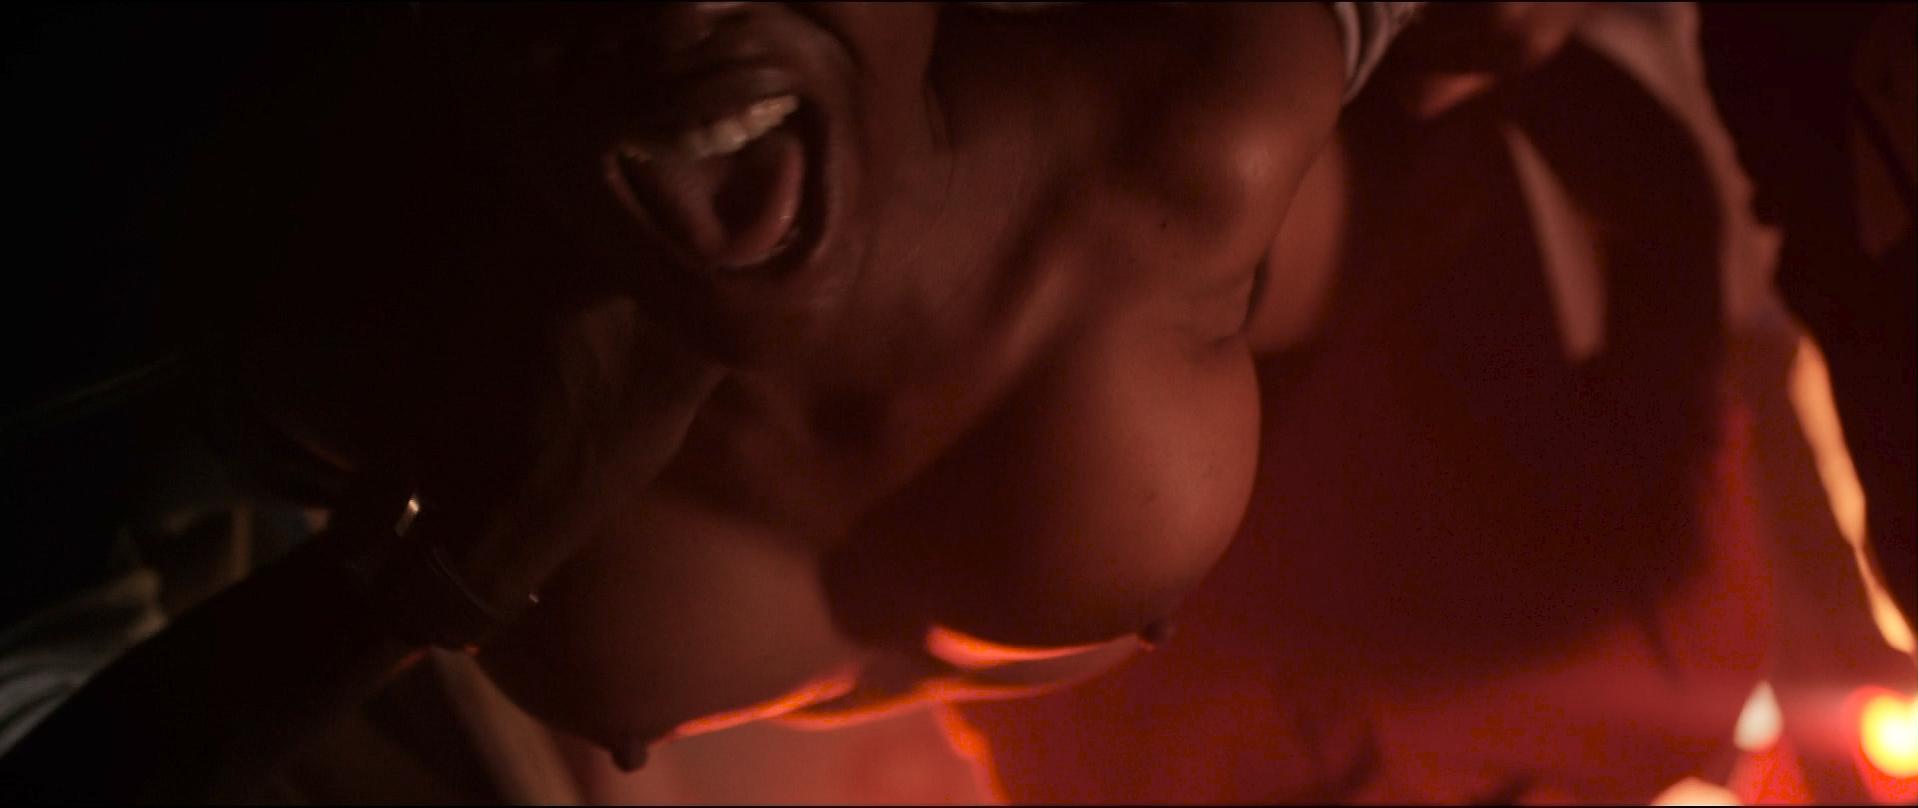 Ebony actress nude sex scenes